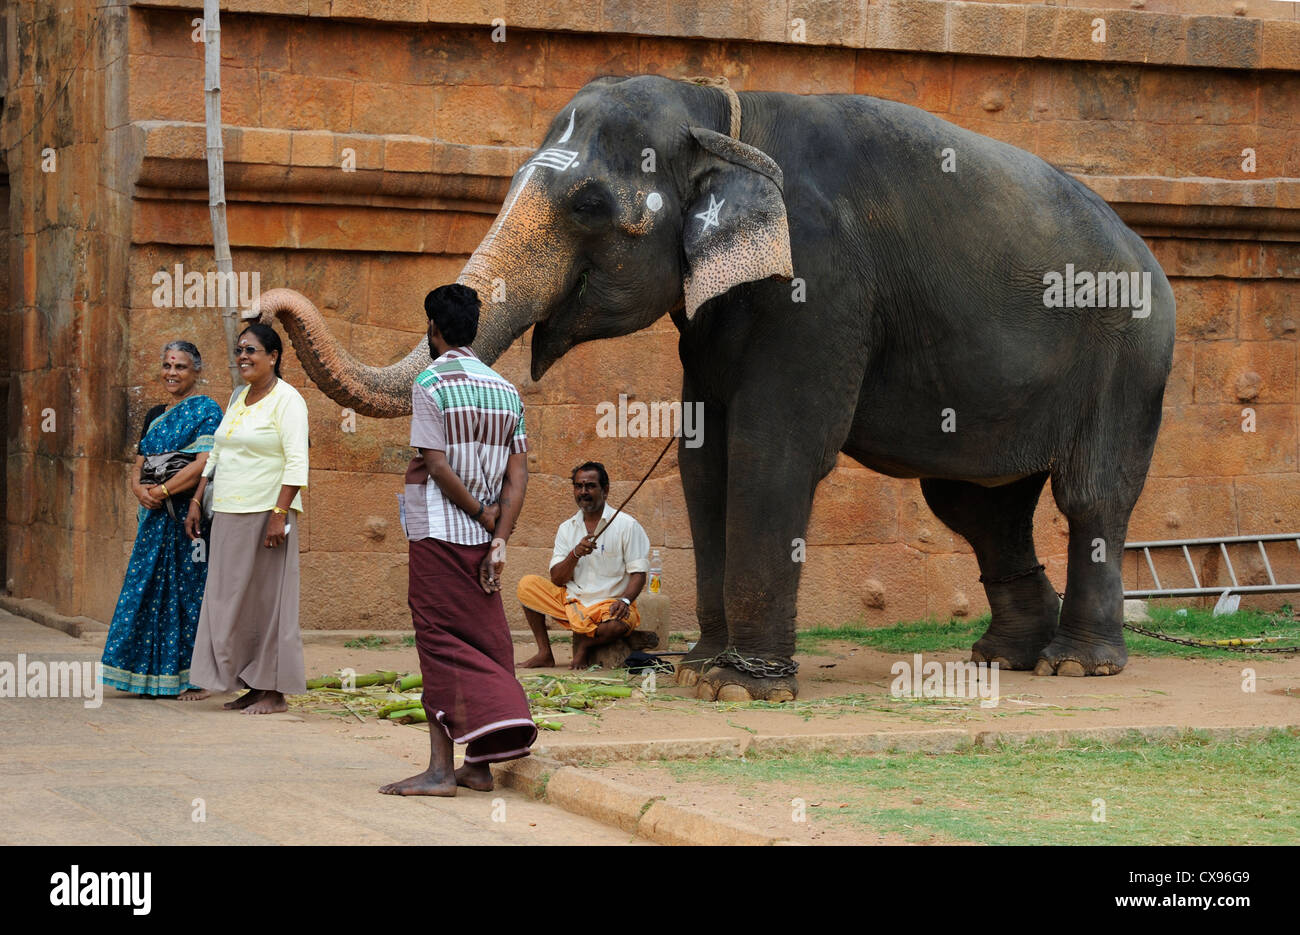 Elephant Blessing, India Stock Photo